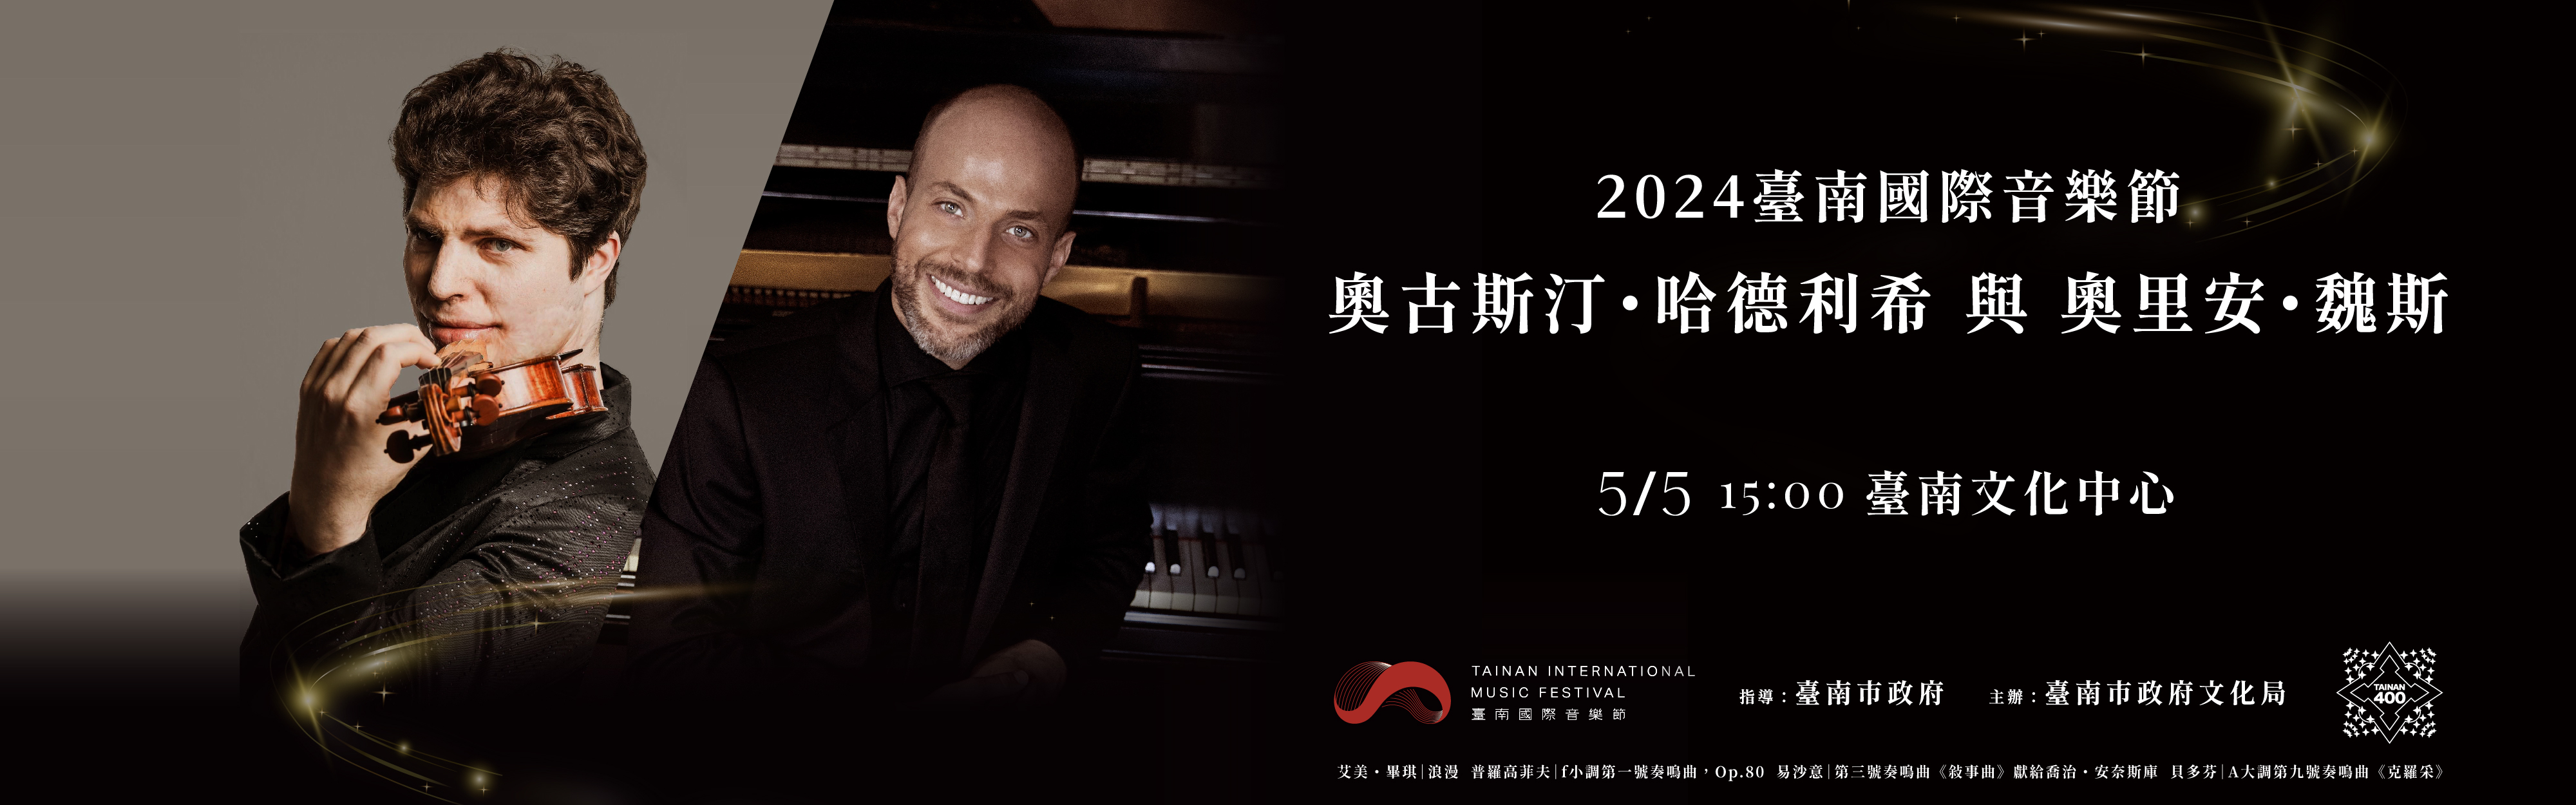 臺南400 x 2024臺南國際音樂節-小提琴巨星哈德利希